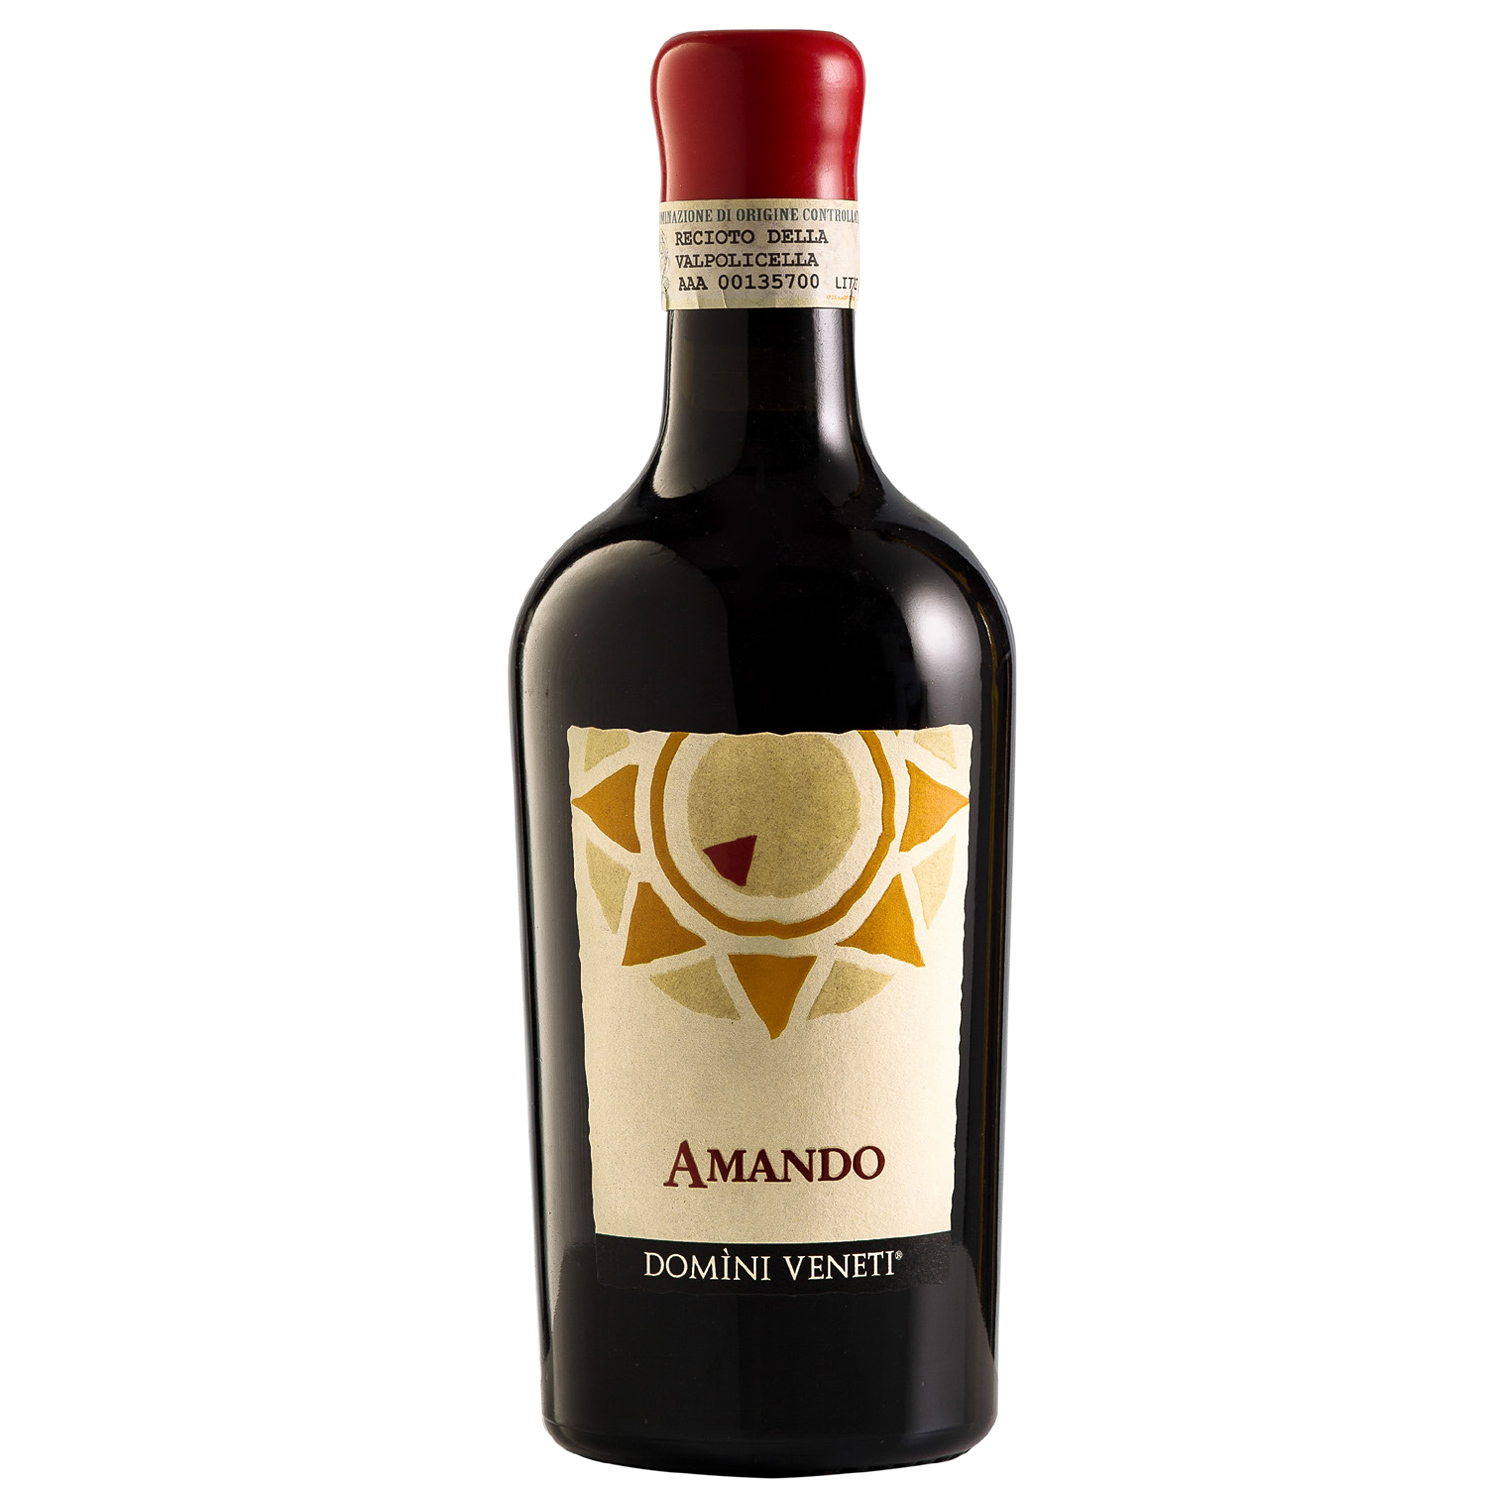 Italienischer Rotwein  Amando 2012 Recioto della Valpolicella Classico Amandorlato